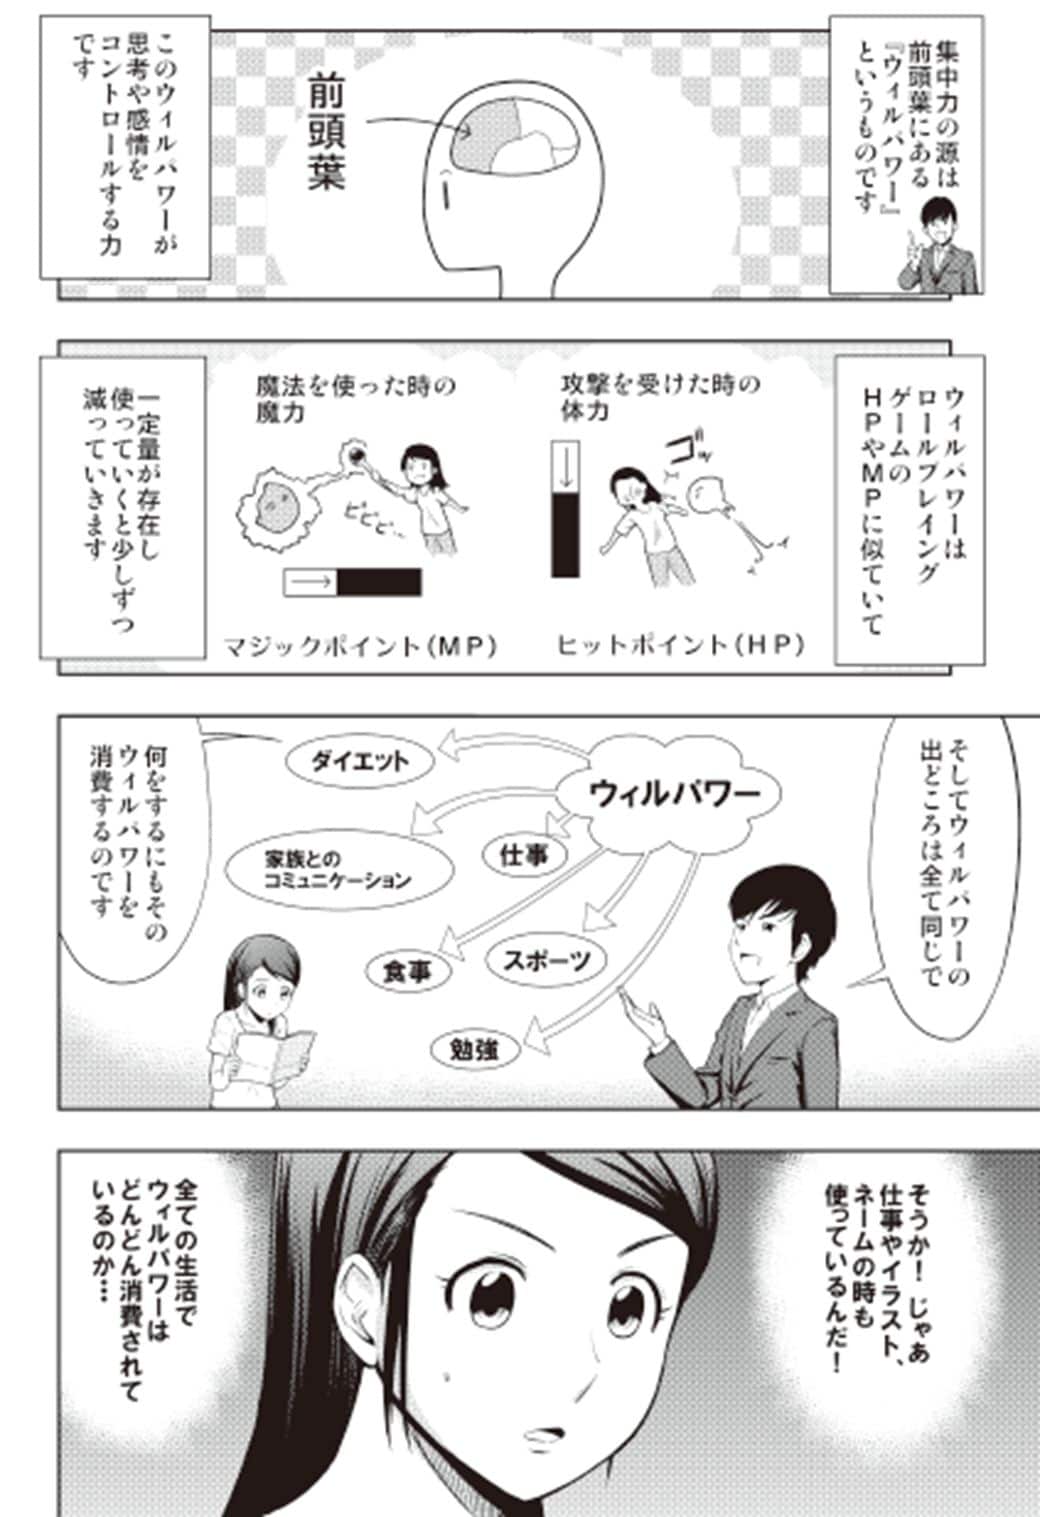 Daigoが説く 1年を13カ月にする 集中力の鍛え方 漫画 東洋経済オンライン 経済ニュースの新基準